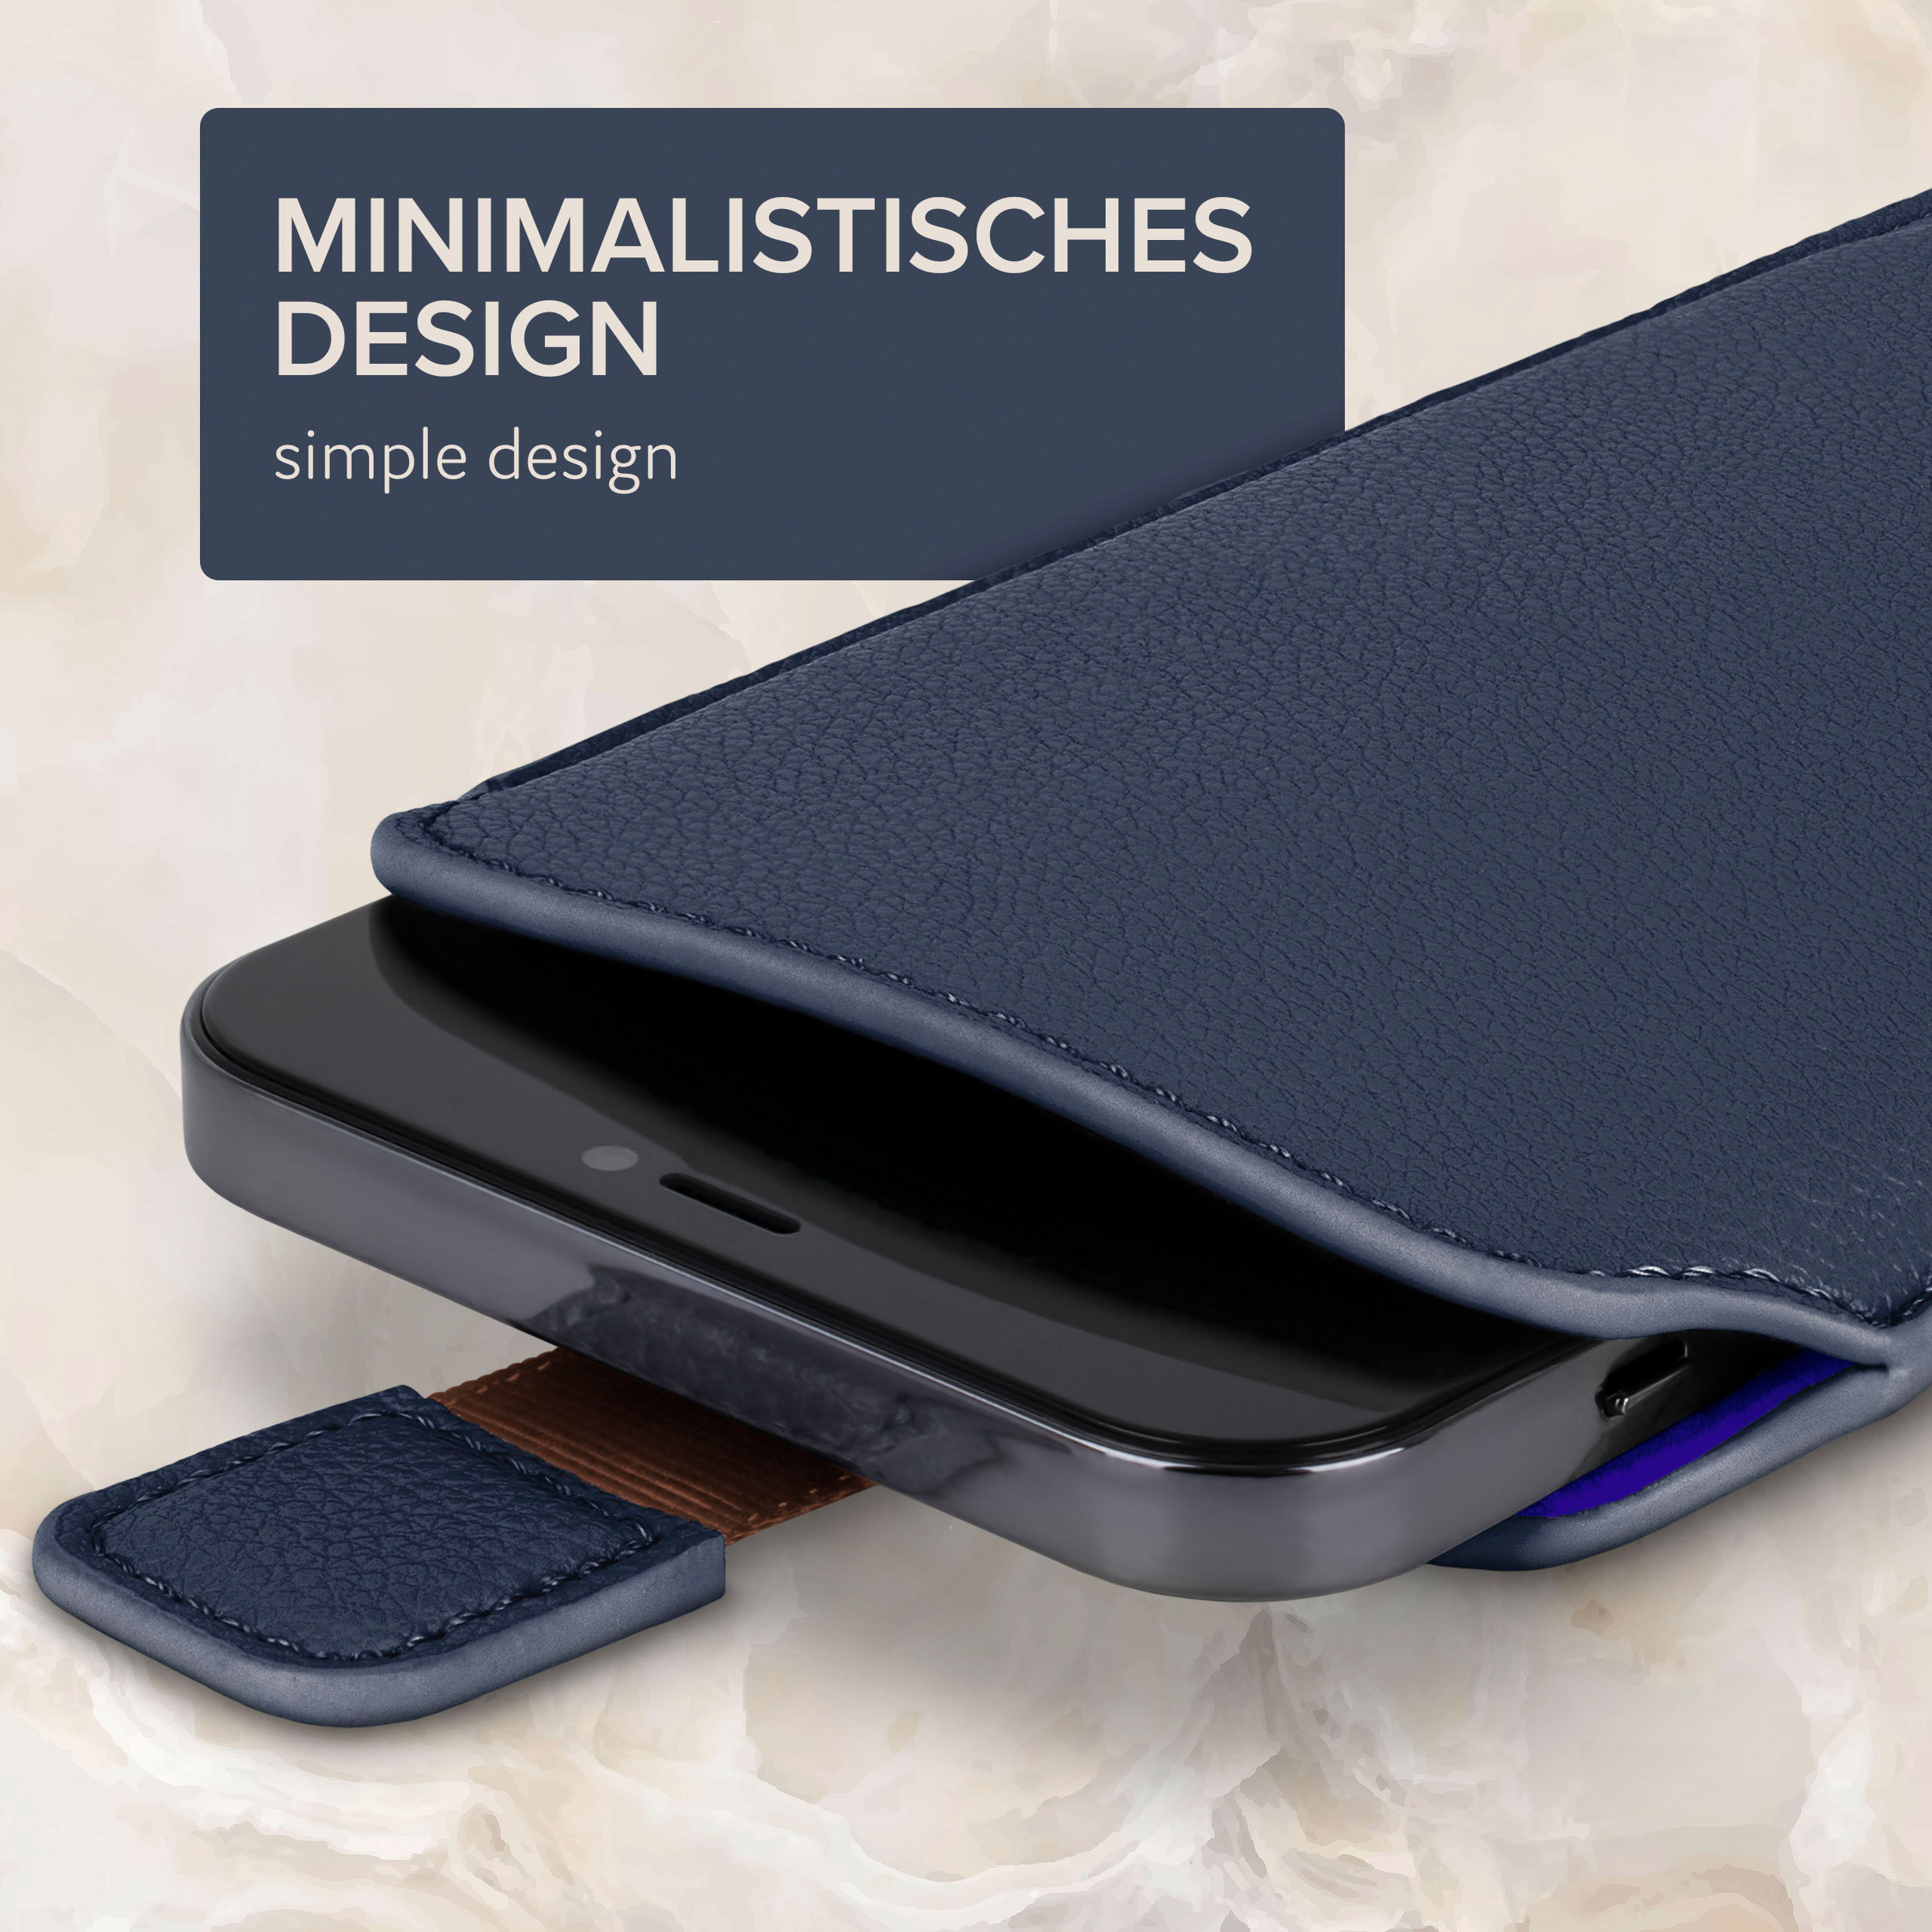 Cover, Einsteckhülle Zuglasche, Full A8 Galaxy Dunkelblau mit ONEFLOW Samsung, (2018),